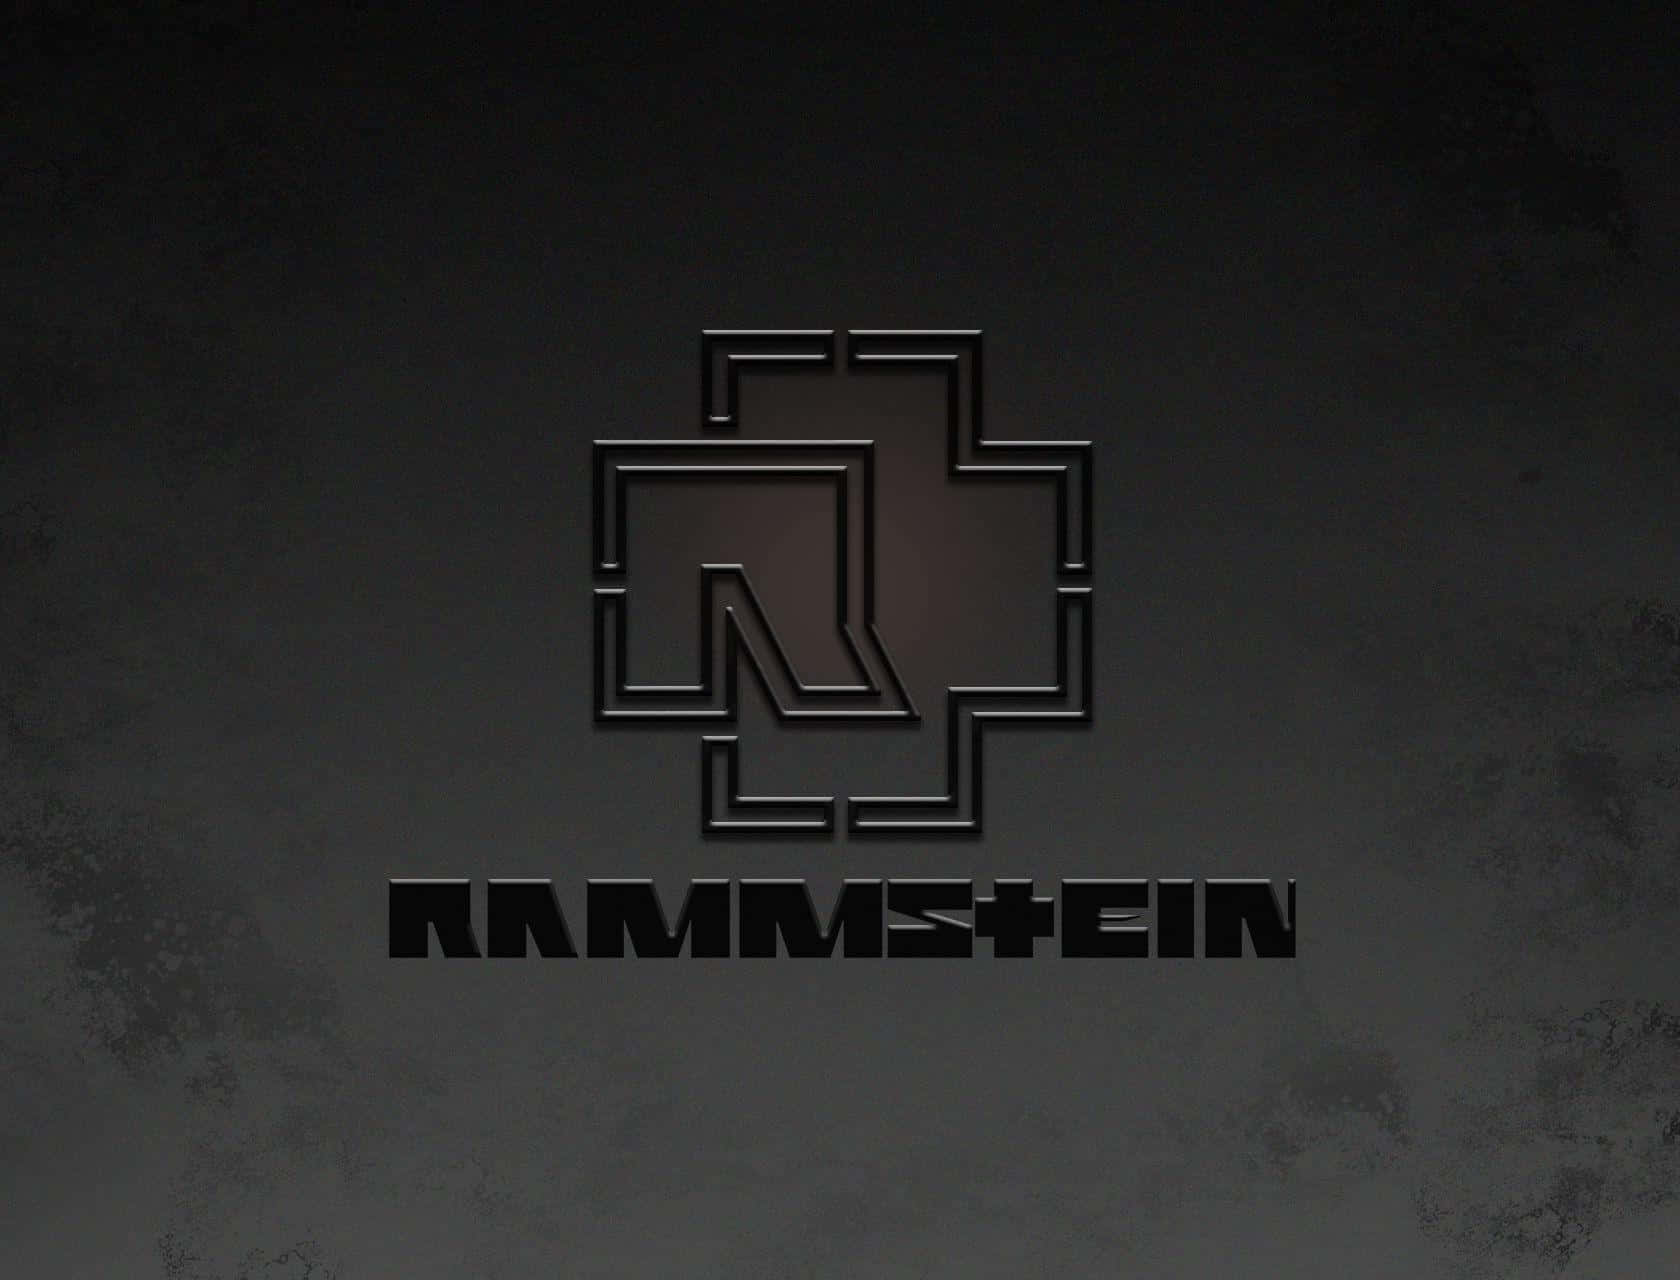 Rammstein Logo Wallpaper Wallpaper